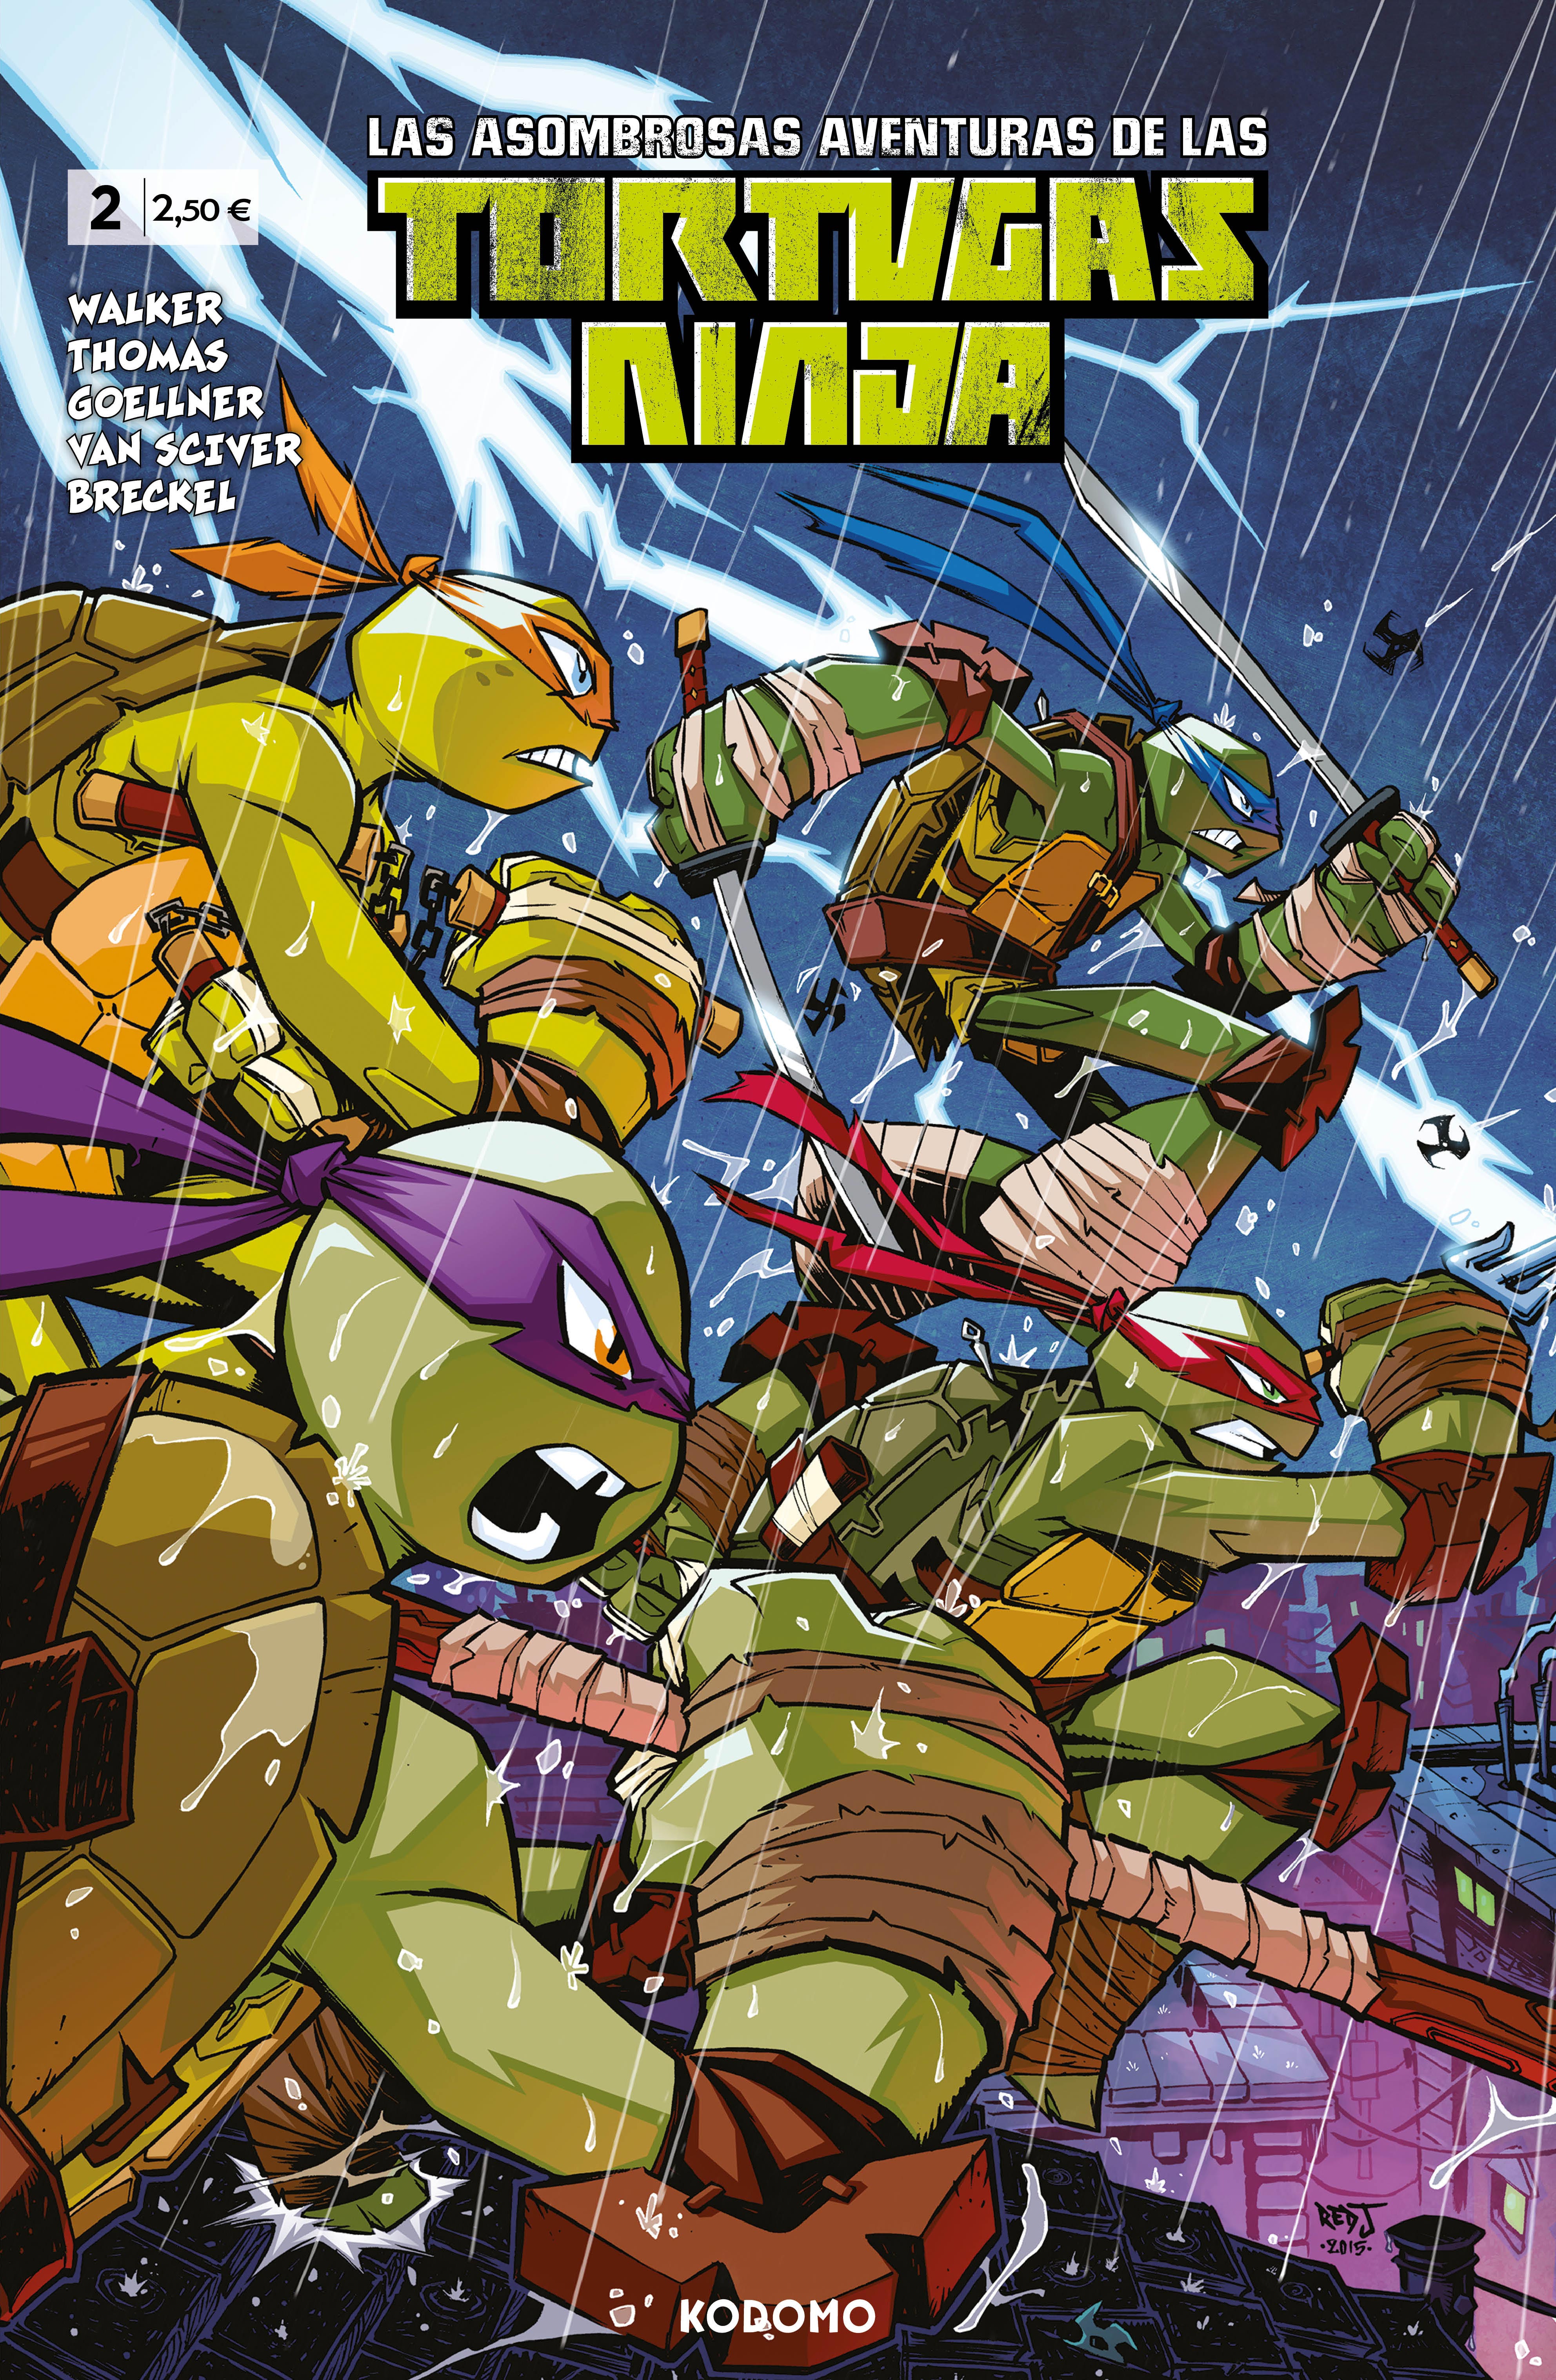 Las asombrosas aventuras de las Tortugas Ninja #02